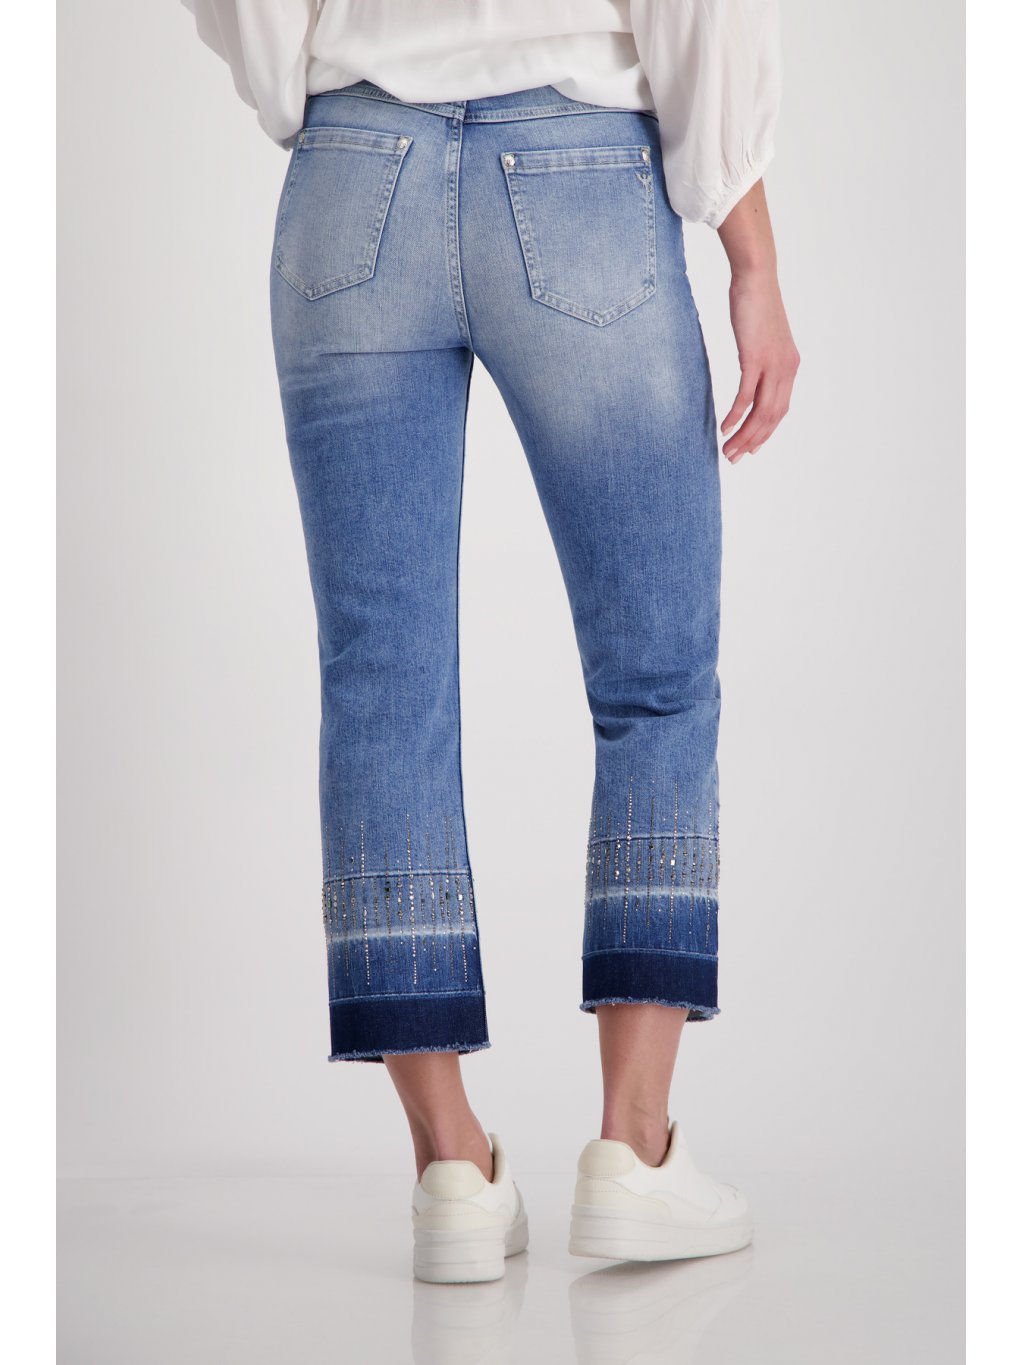 Kalhoty Monari 8756 modré džíny zkrácené se zdobením